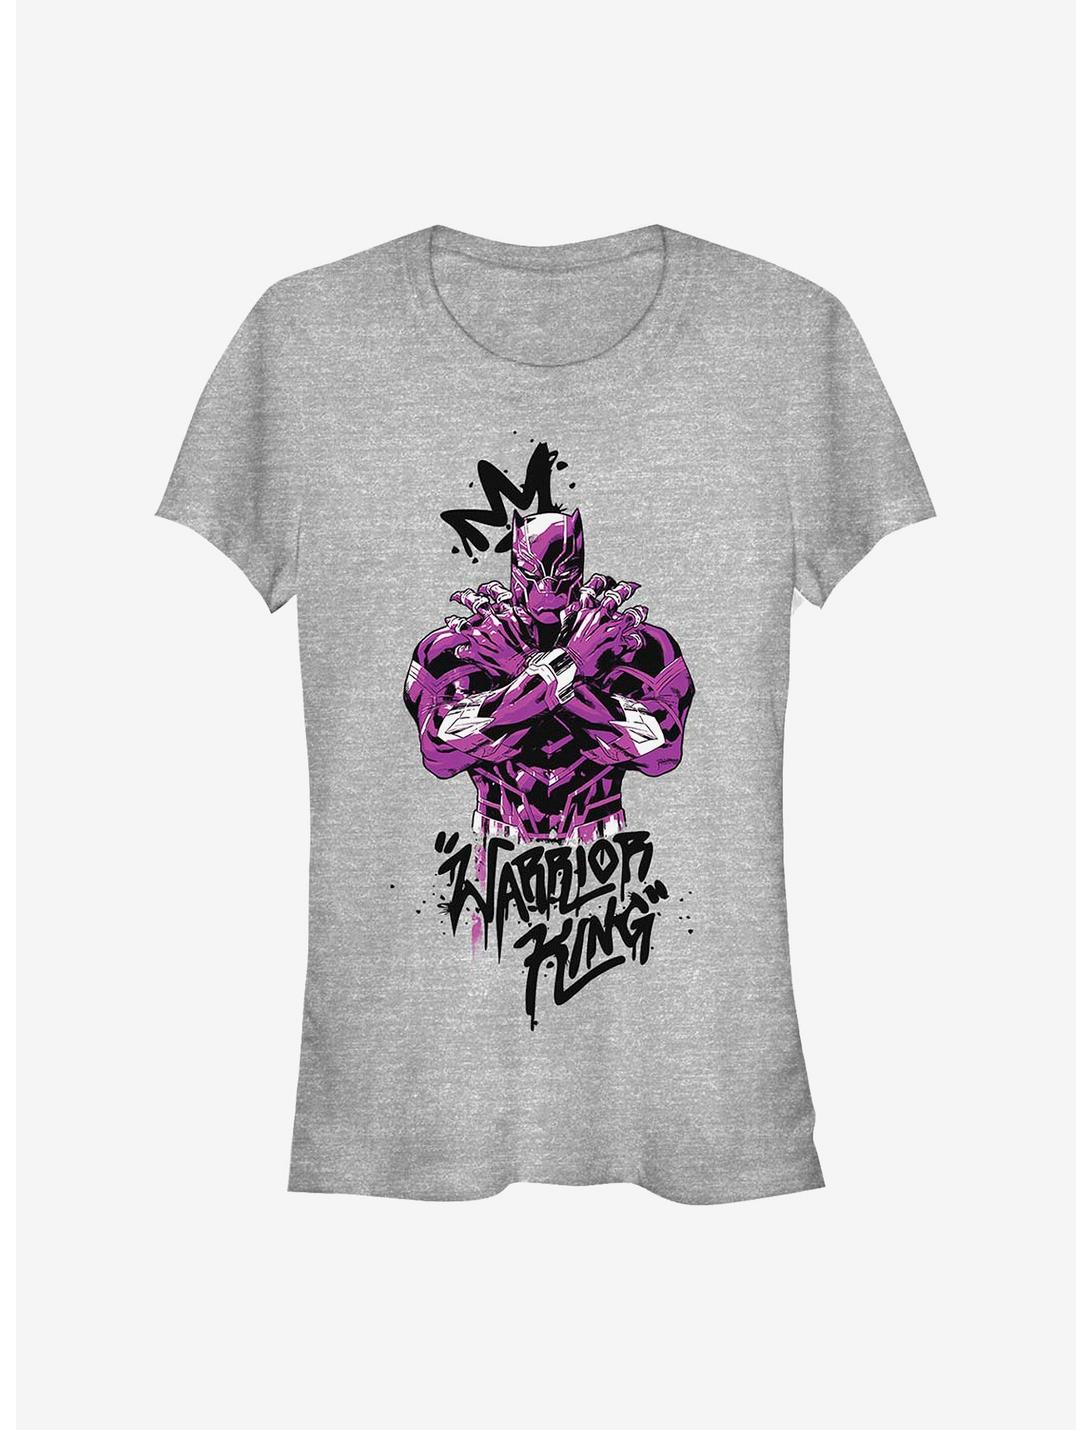 Marvel Black Panther Purple King Girls T-Shirt, ATH HTR, hi-res